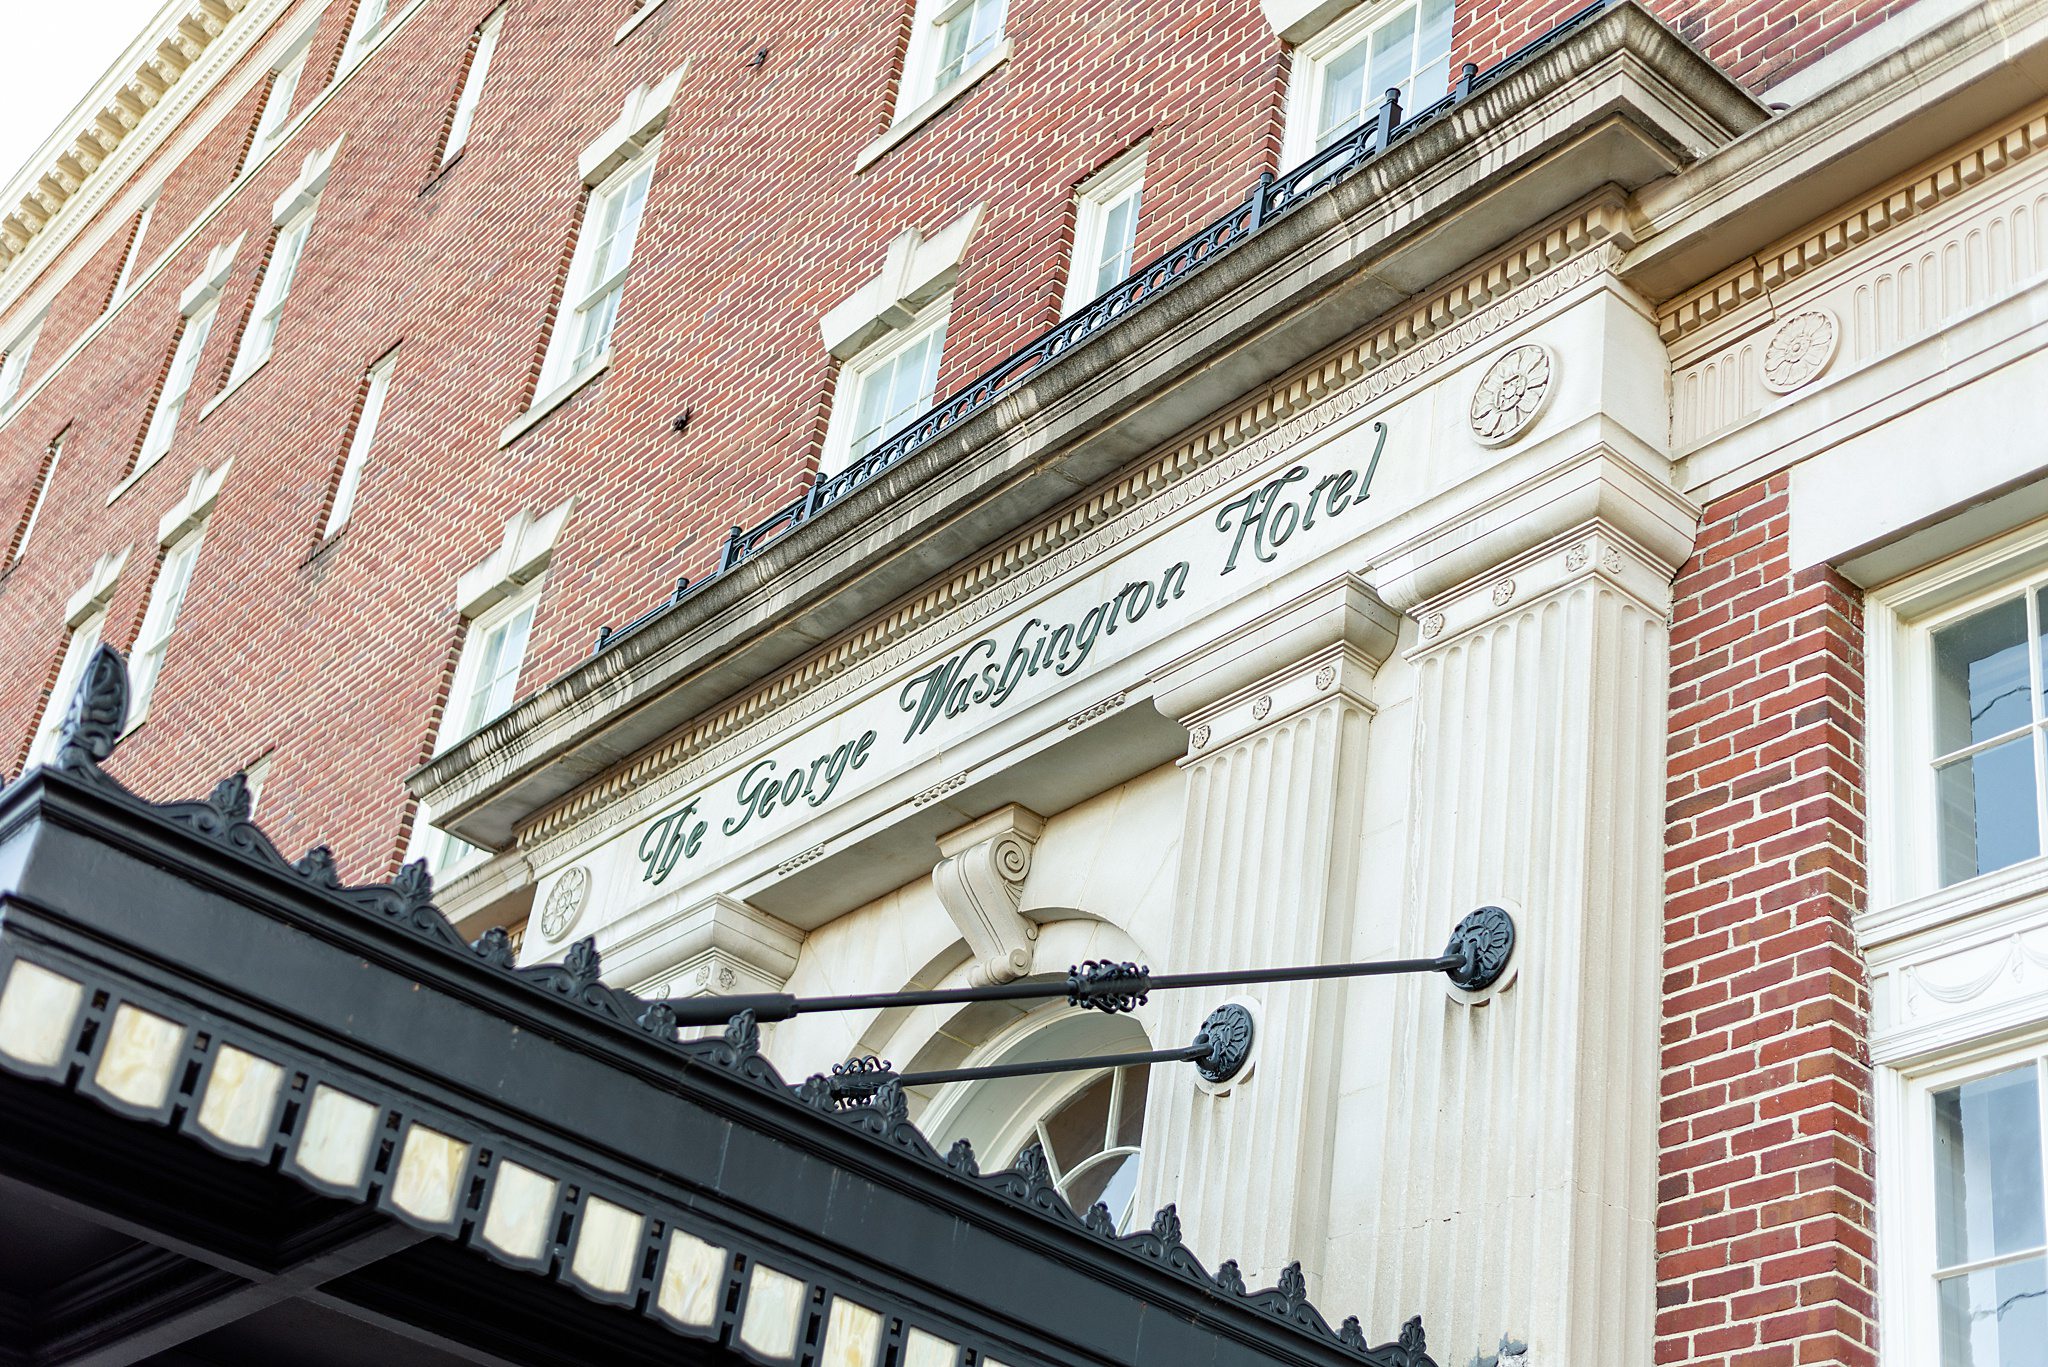 George Washington Hotel